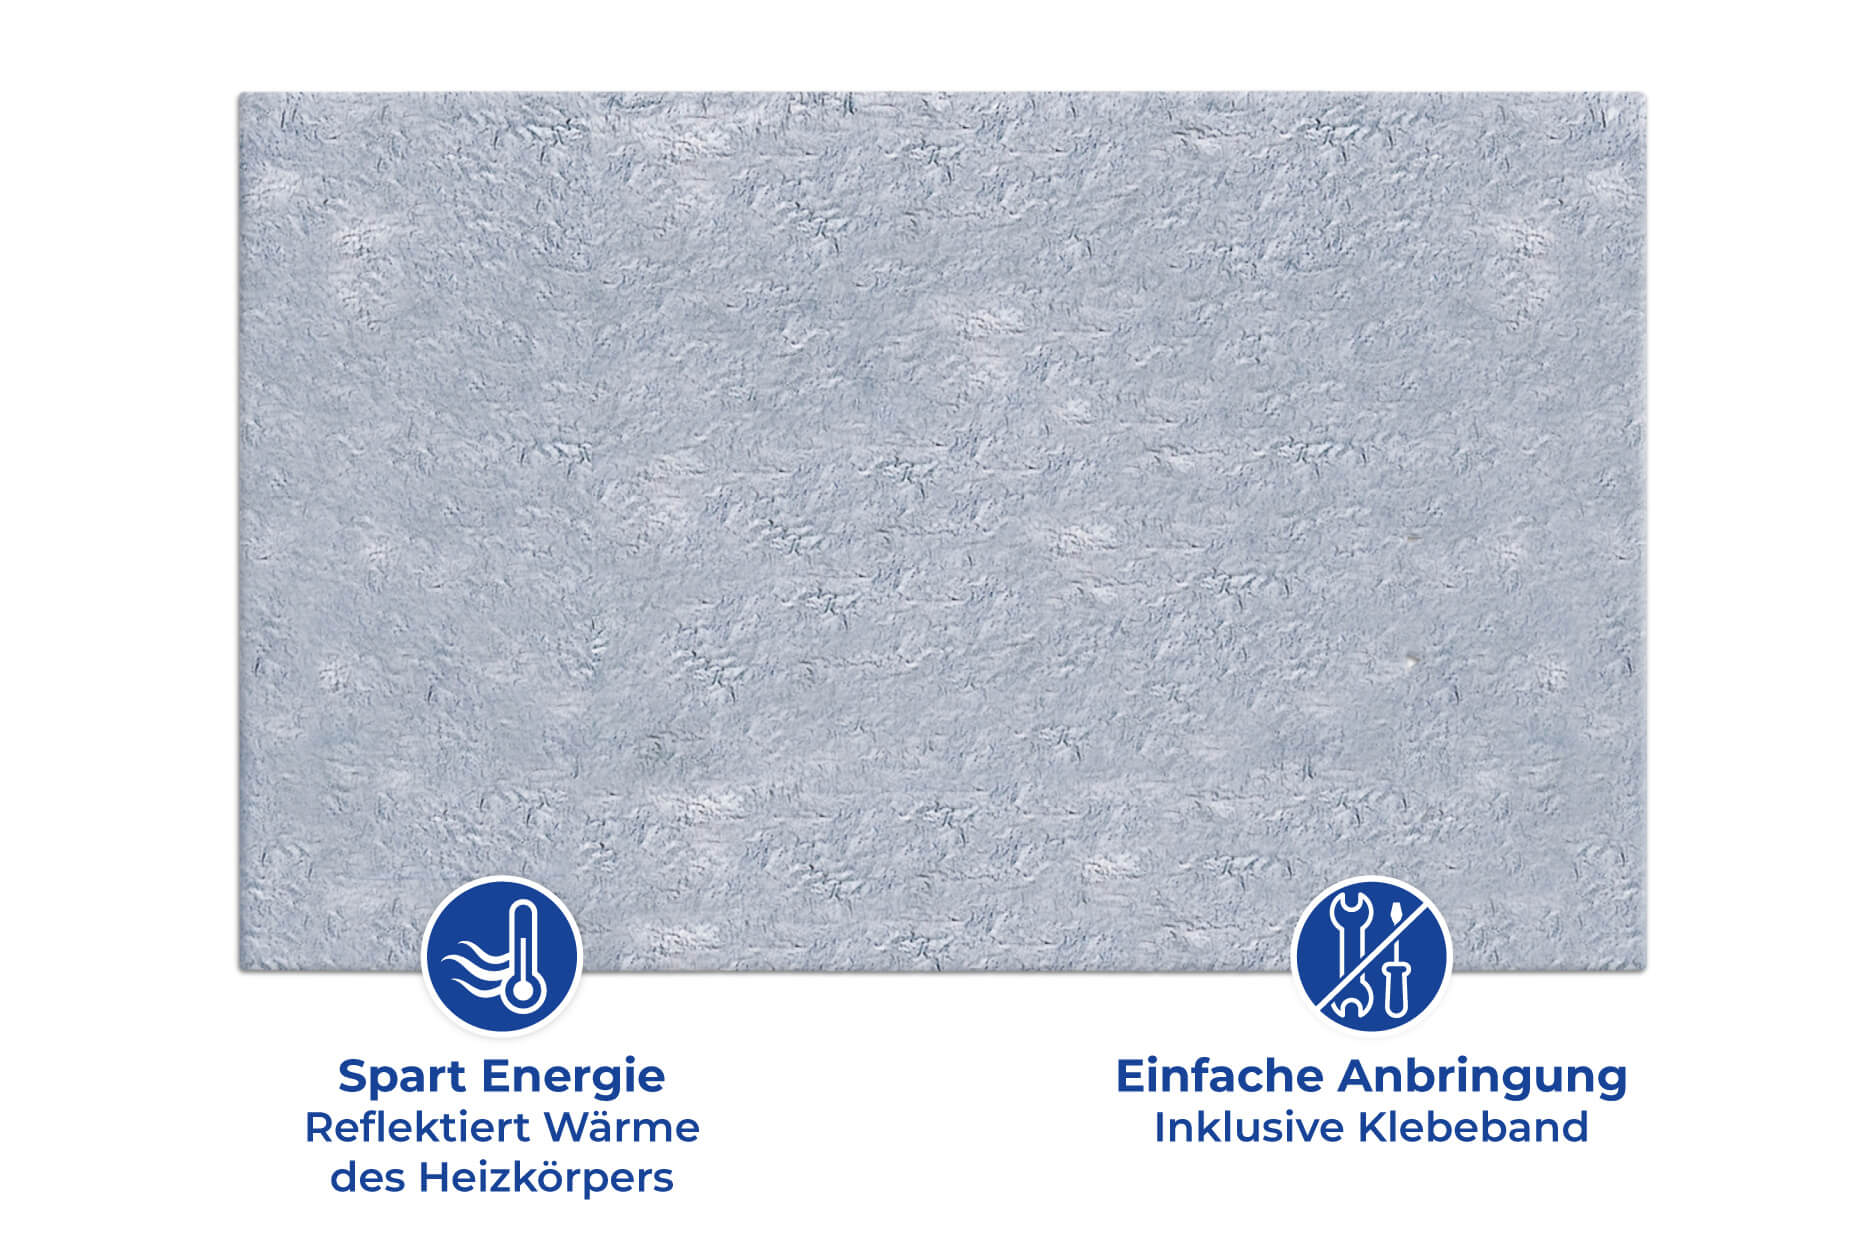 EASYmaxx Heizkörperreflexionsfolie Wärme-Reflexionsfolie zuschneidbar  70x100cm silber, Reduziert Wärmeverlust zwischen Wand und Heizkörper